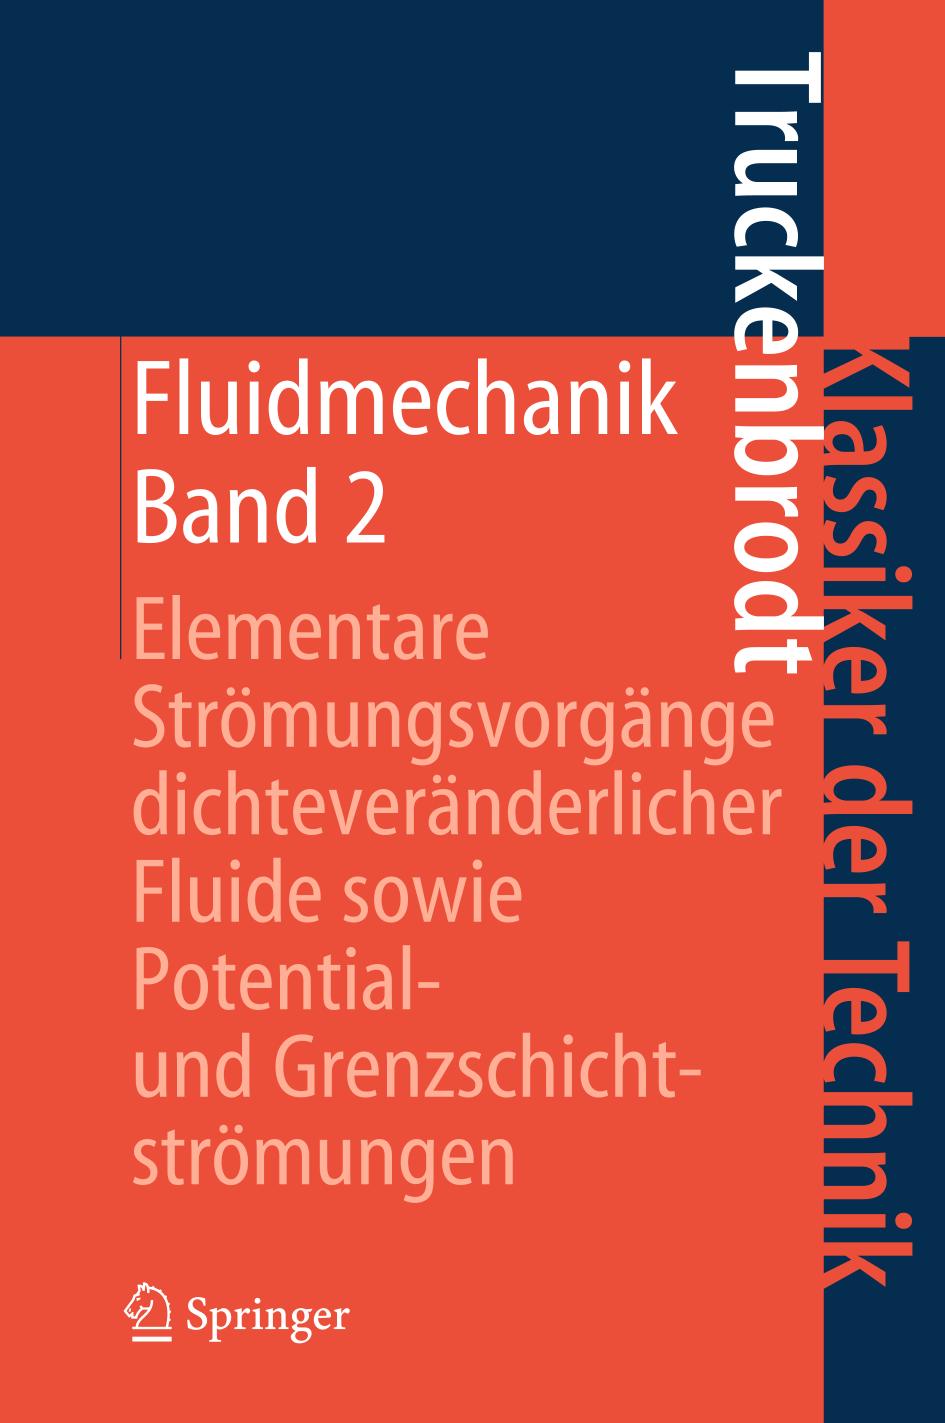 Fluidmechanik Bd. 2. Elementare Strömungsvorgänge dichteveränderlicher Fluide sowie Potential- und Grenzschichtströmungen